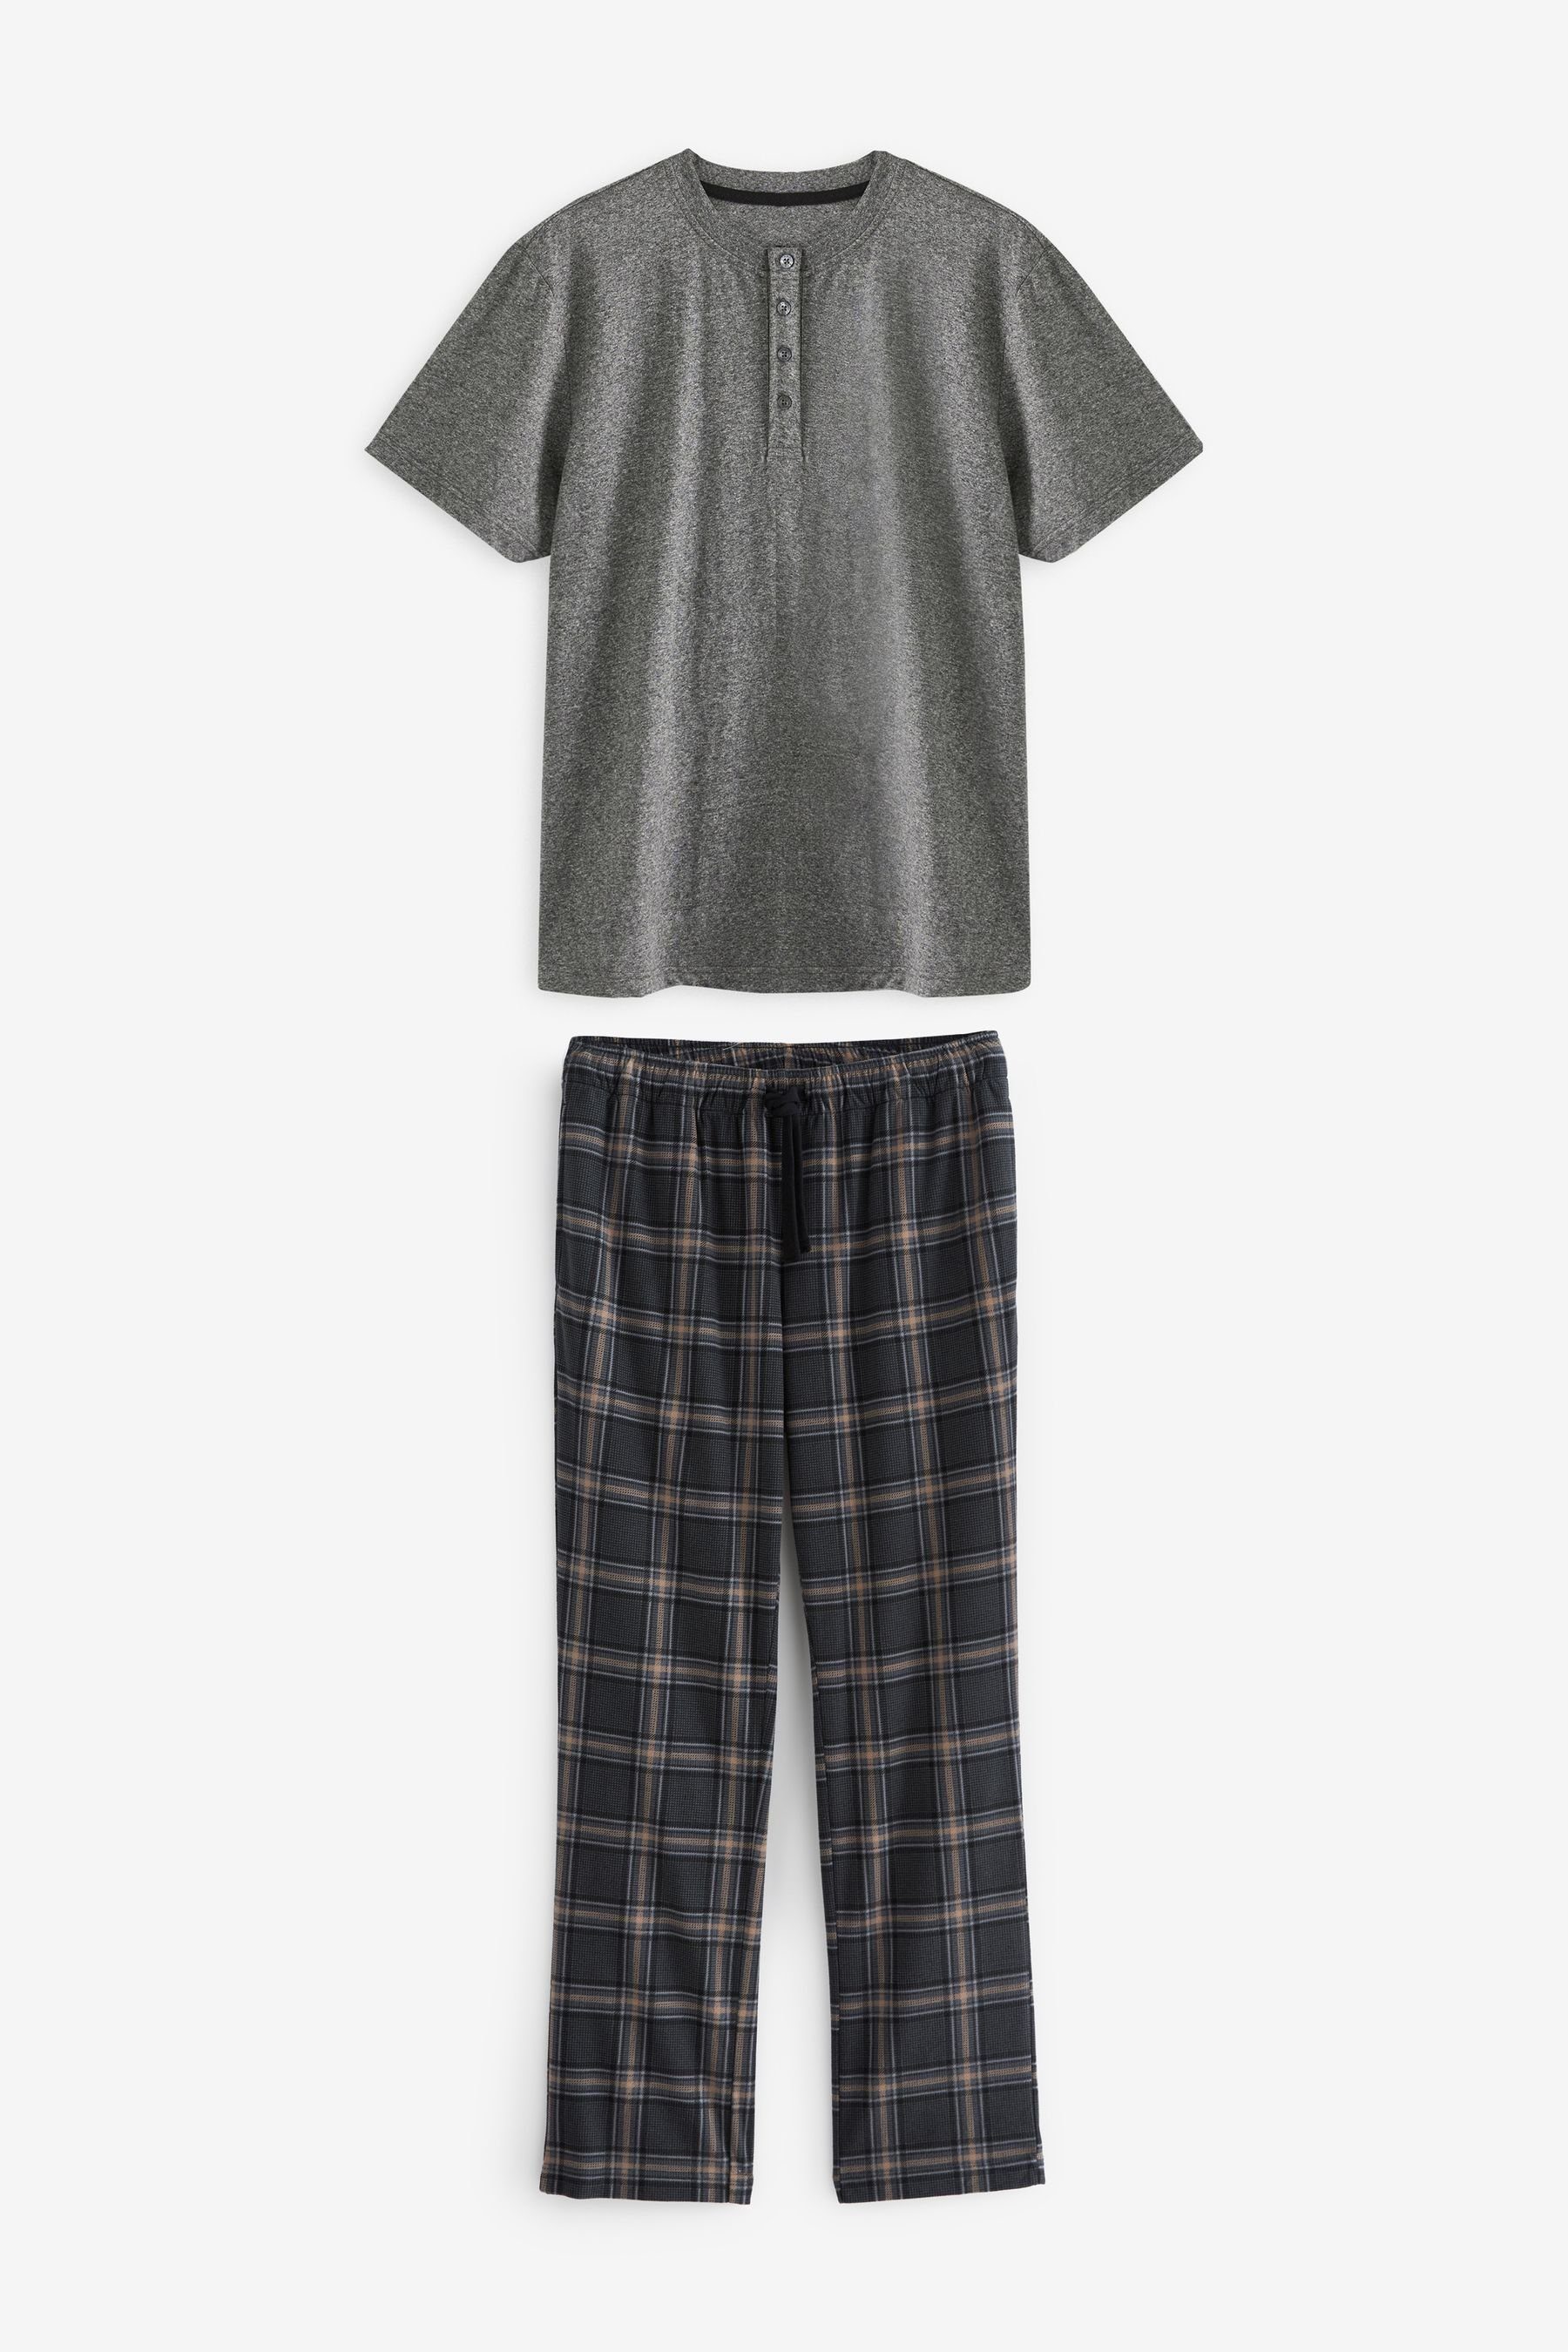 Next Pyjama Bequemer Motionflex Schlafanzug (2 tlg) Grey/Black Check